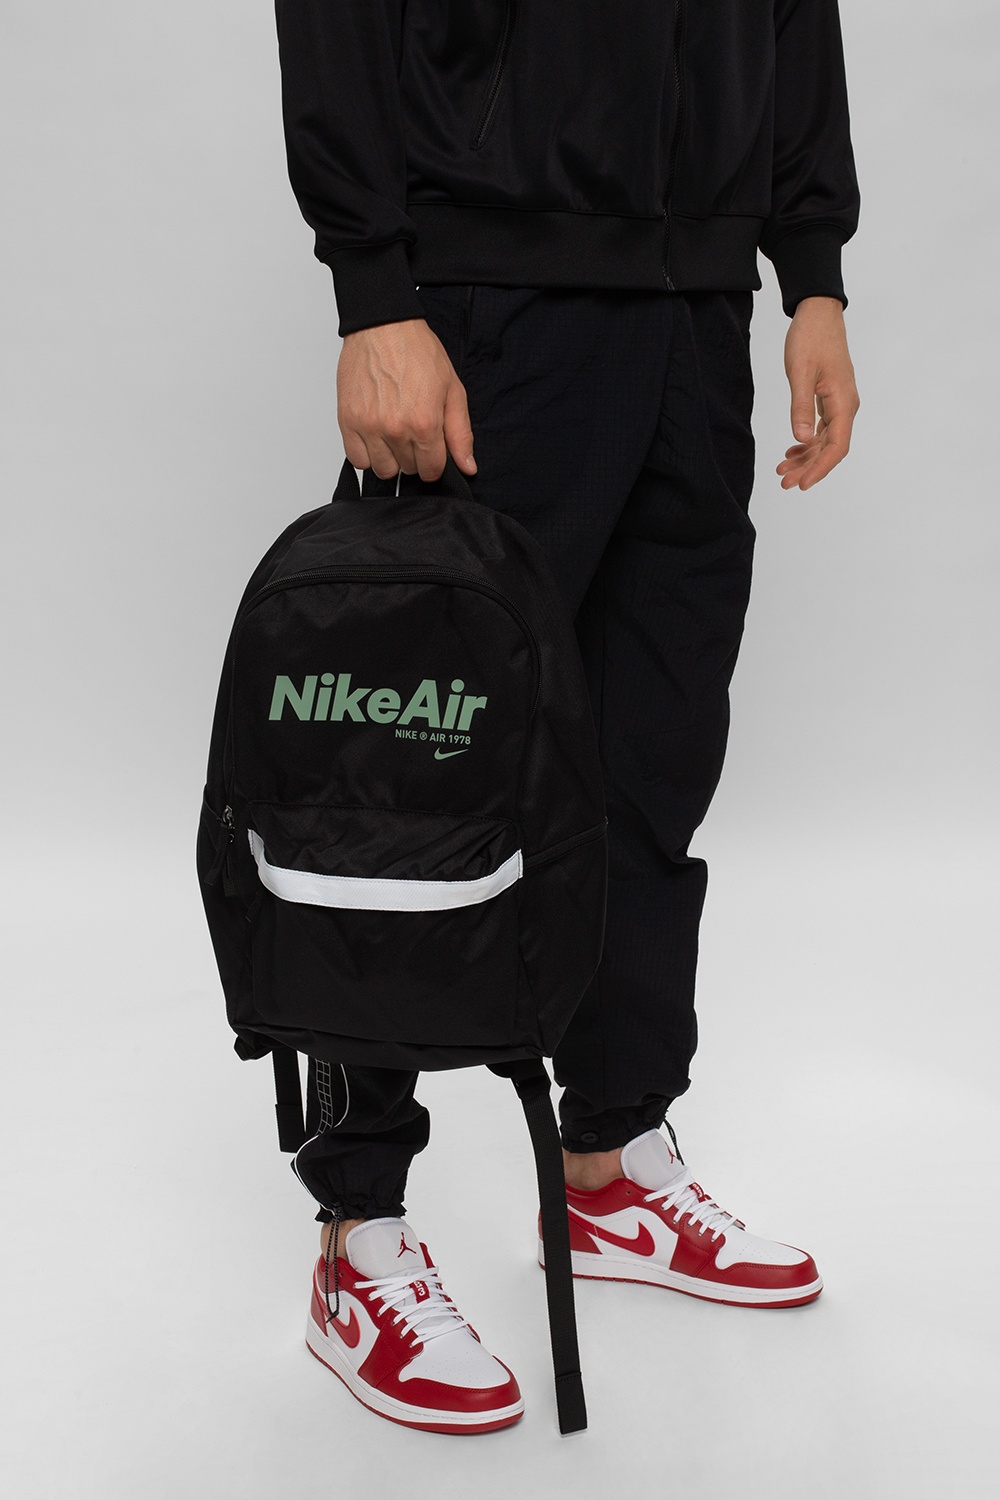 nike air heritage 2.0 backpack